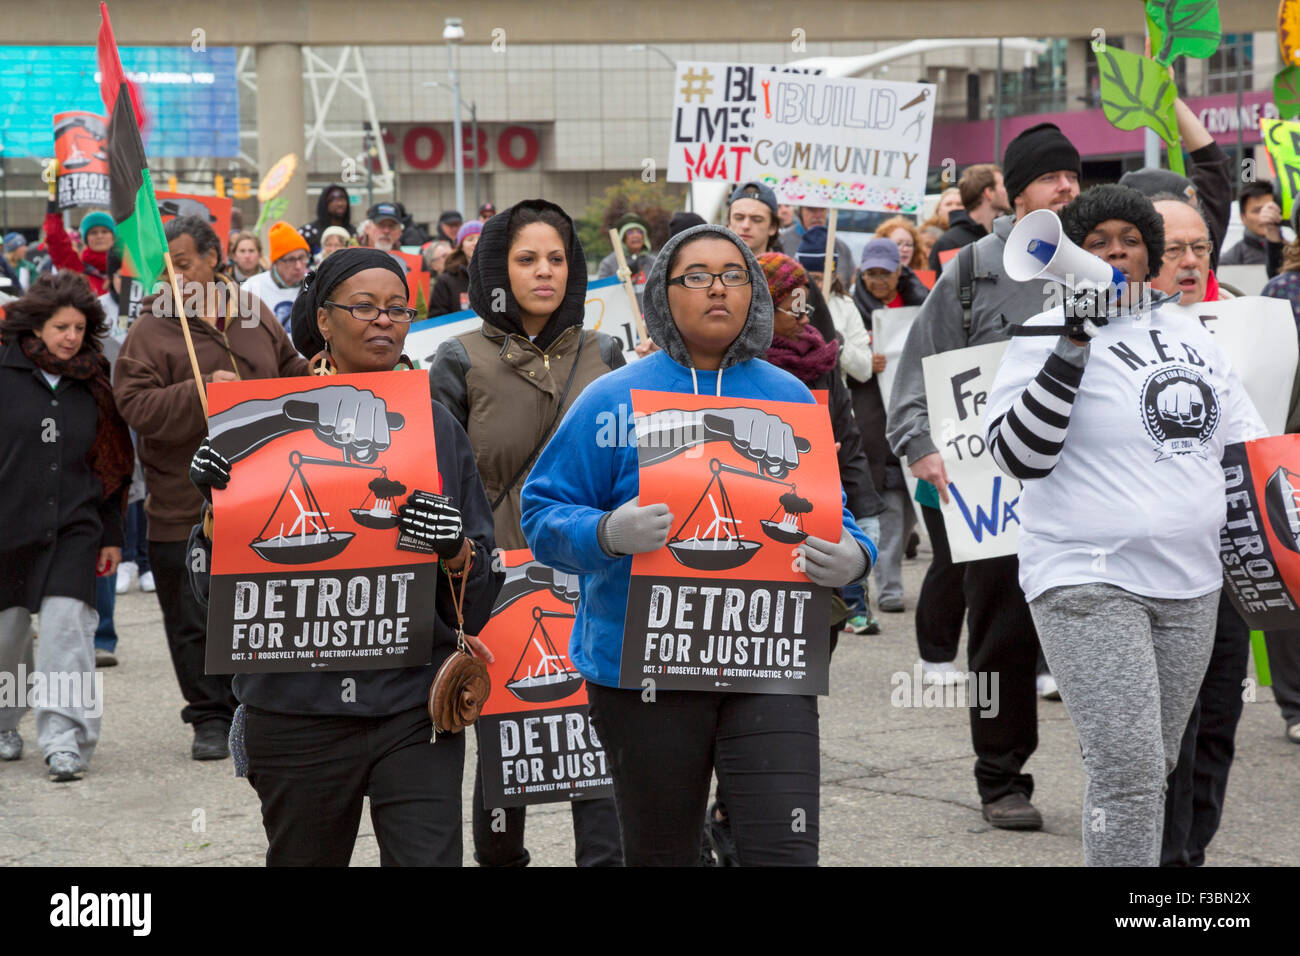 Le Detroit de Mars pour la Justice, qui a réuni des personnes concernées par l'environnement, de la justice raciale, et des questions similaires. Banque D'Images